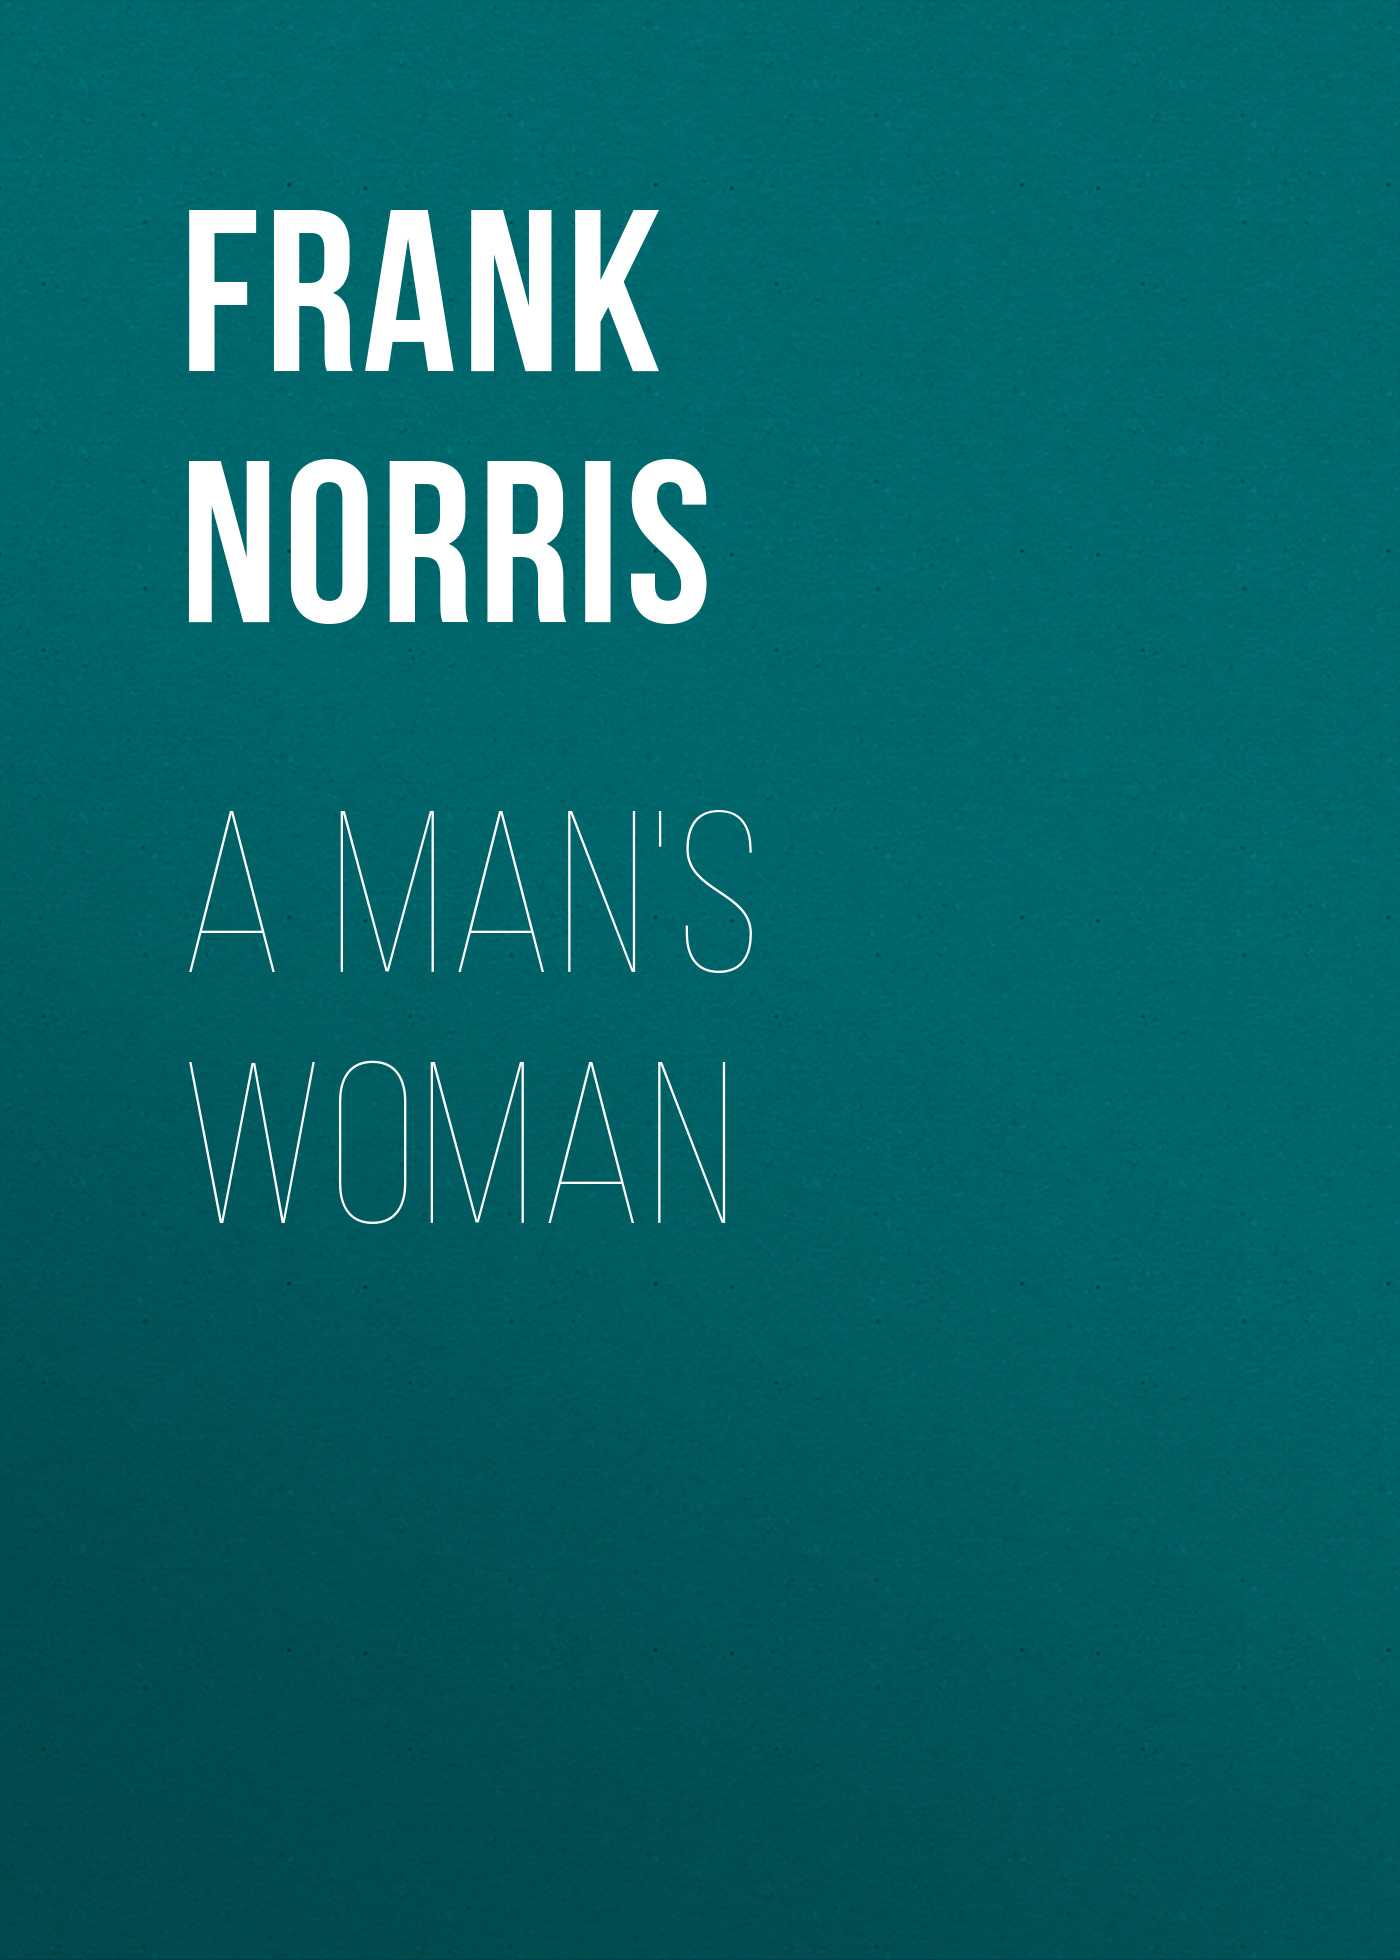 Книга A Man's Woman из серии , созданная Frank Norris, может относится к жанру Зарубежная классика, Литература 19 века, Зарубежная старинная литература. Стоимость электронной книги A Man's Woman с идентификатором 36094317 составляет 0 руб.